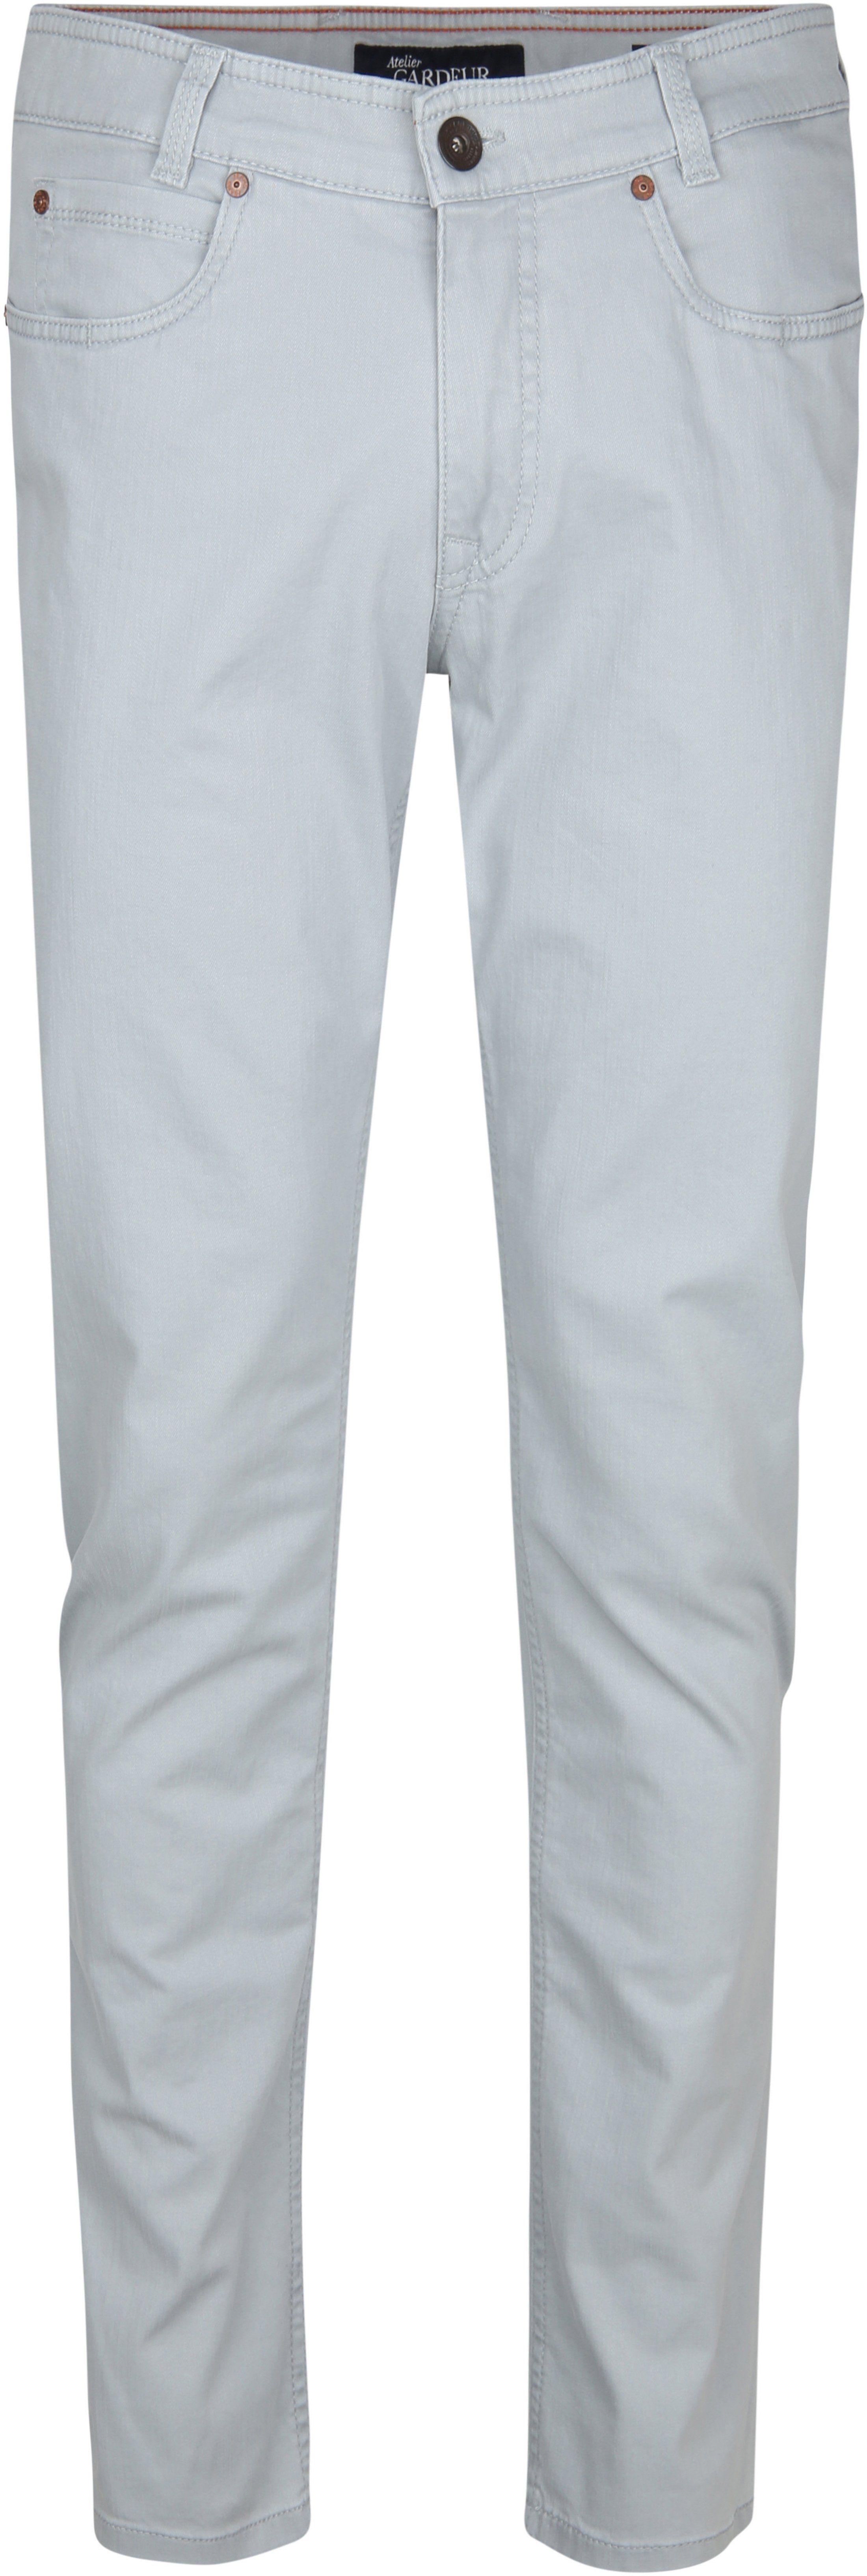 Gardeur Batu Pants Light Grey size W 33